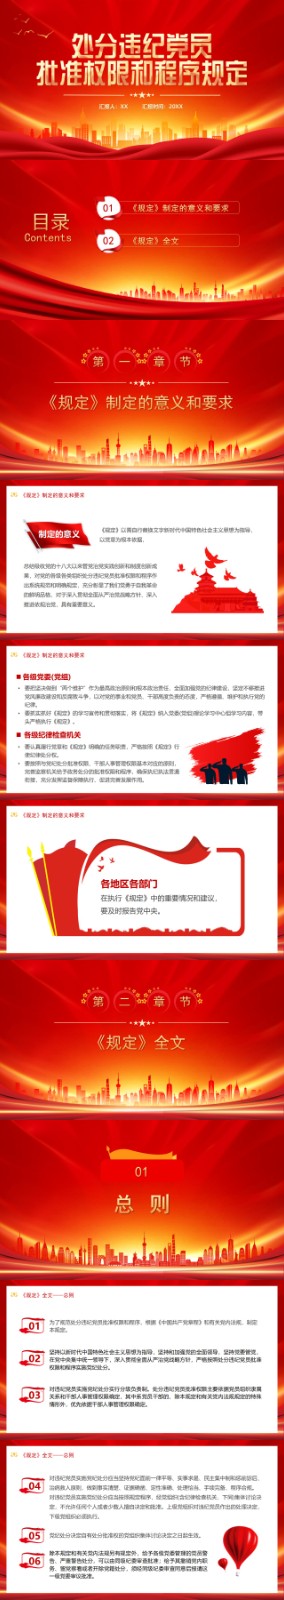 中国共产党处分违纪党员批准权限和程序规定PPT_01.jpg